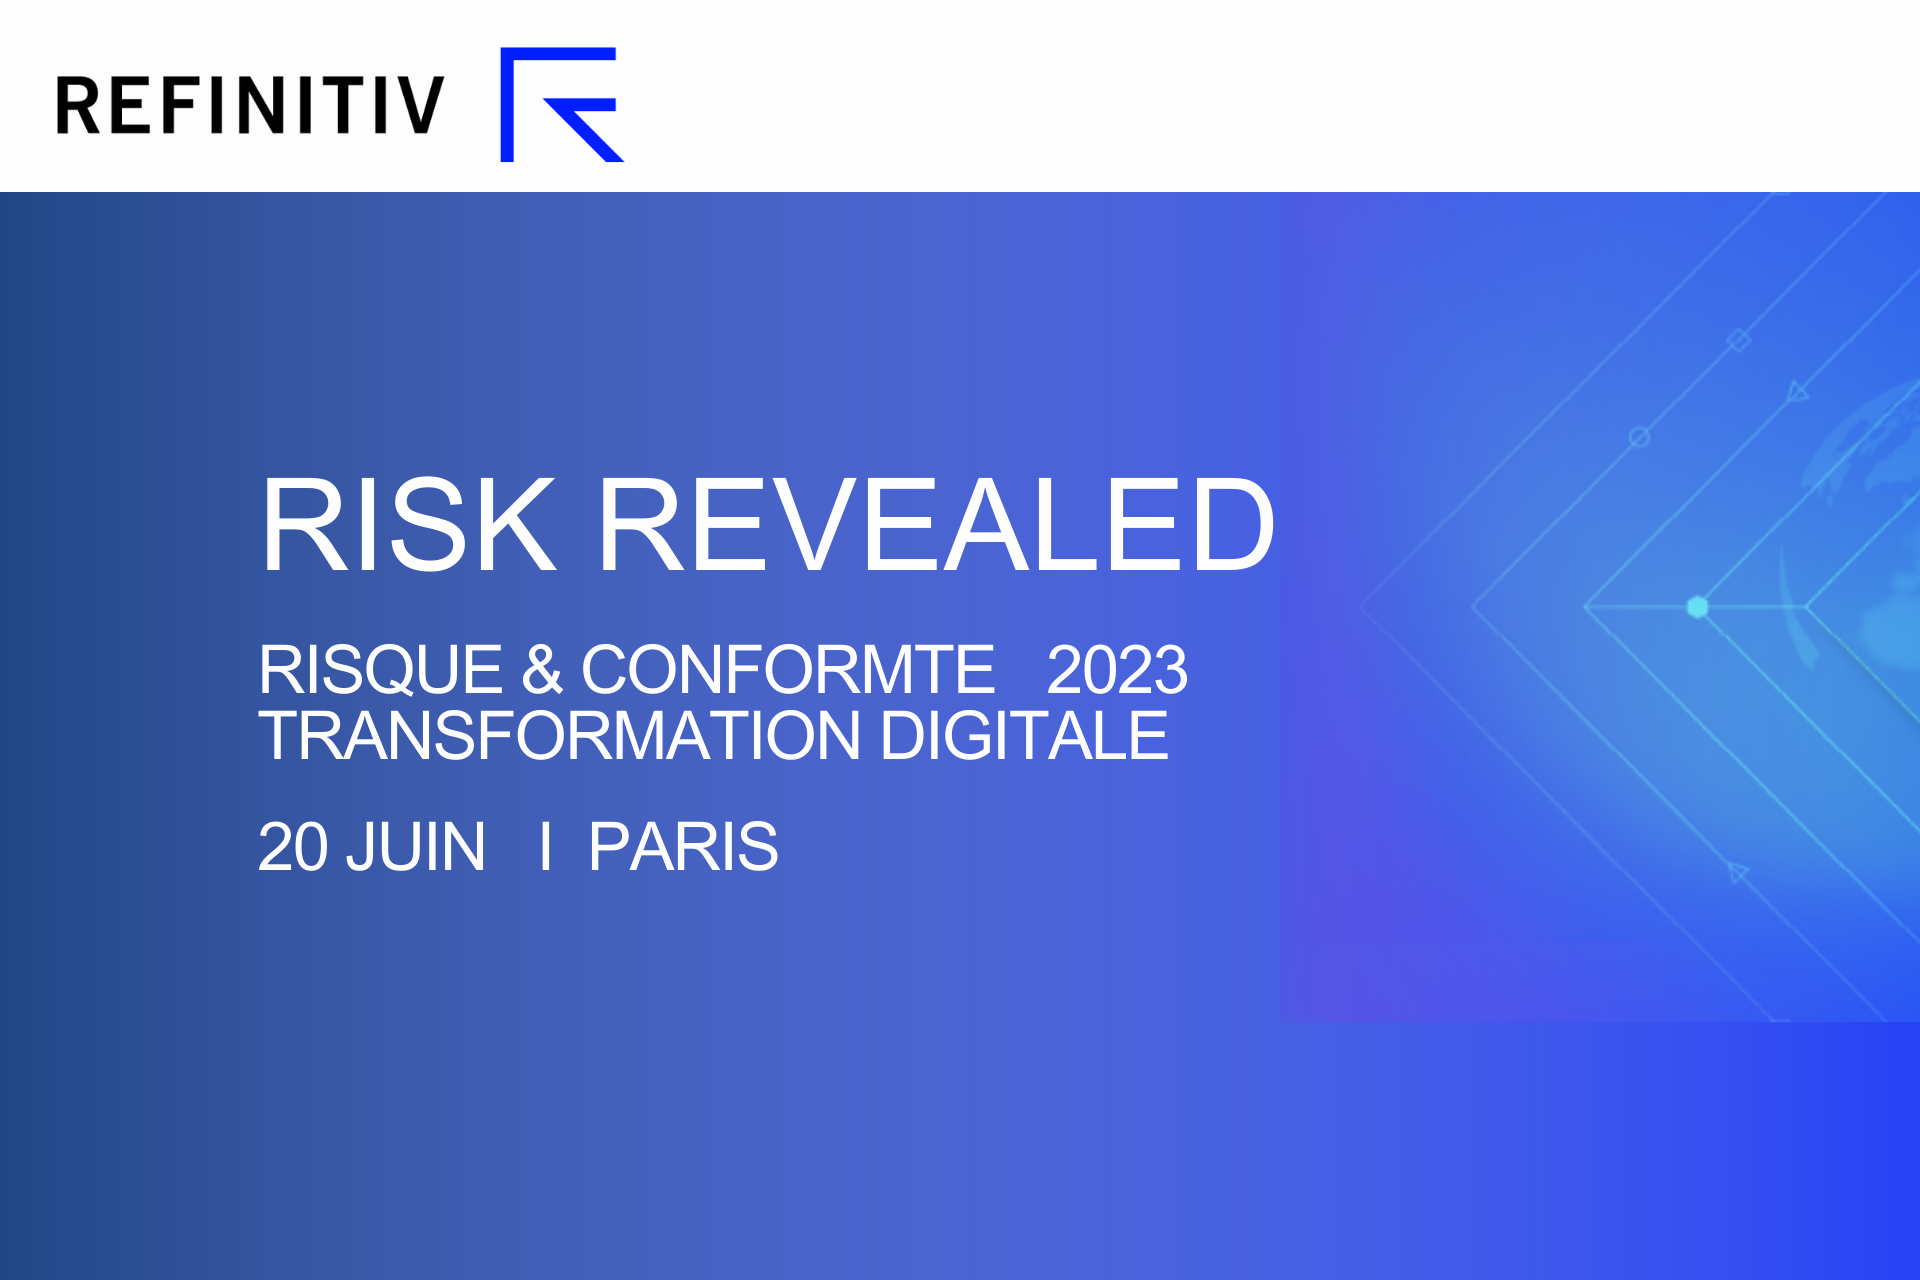 thumbnails "Risk Revealed" - Paris